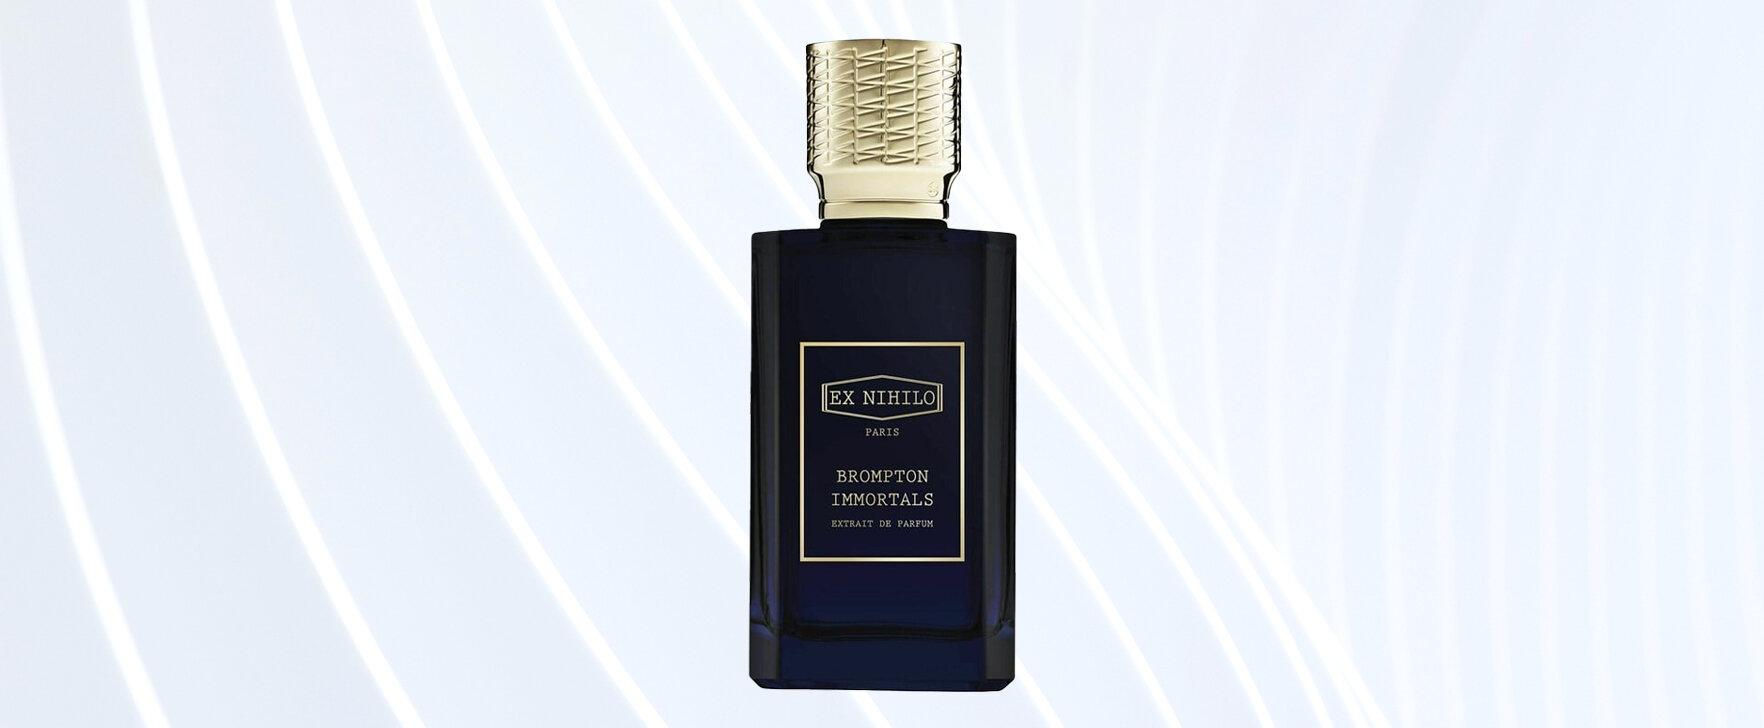 "Brompton Immortals (Extrait de Parfum)" by Ex Nihilo: An Intensified Version of the Eau de Parfum